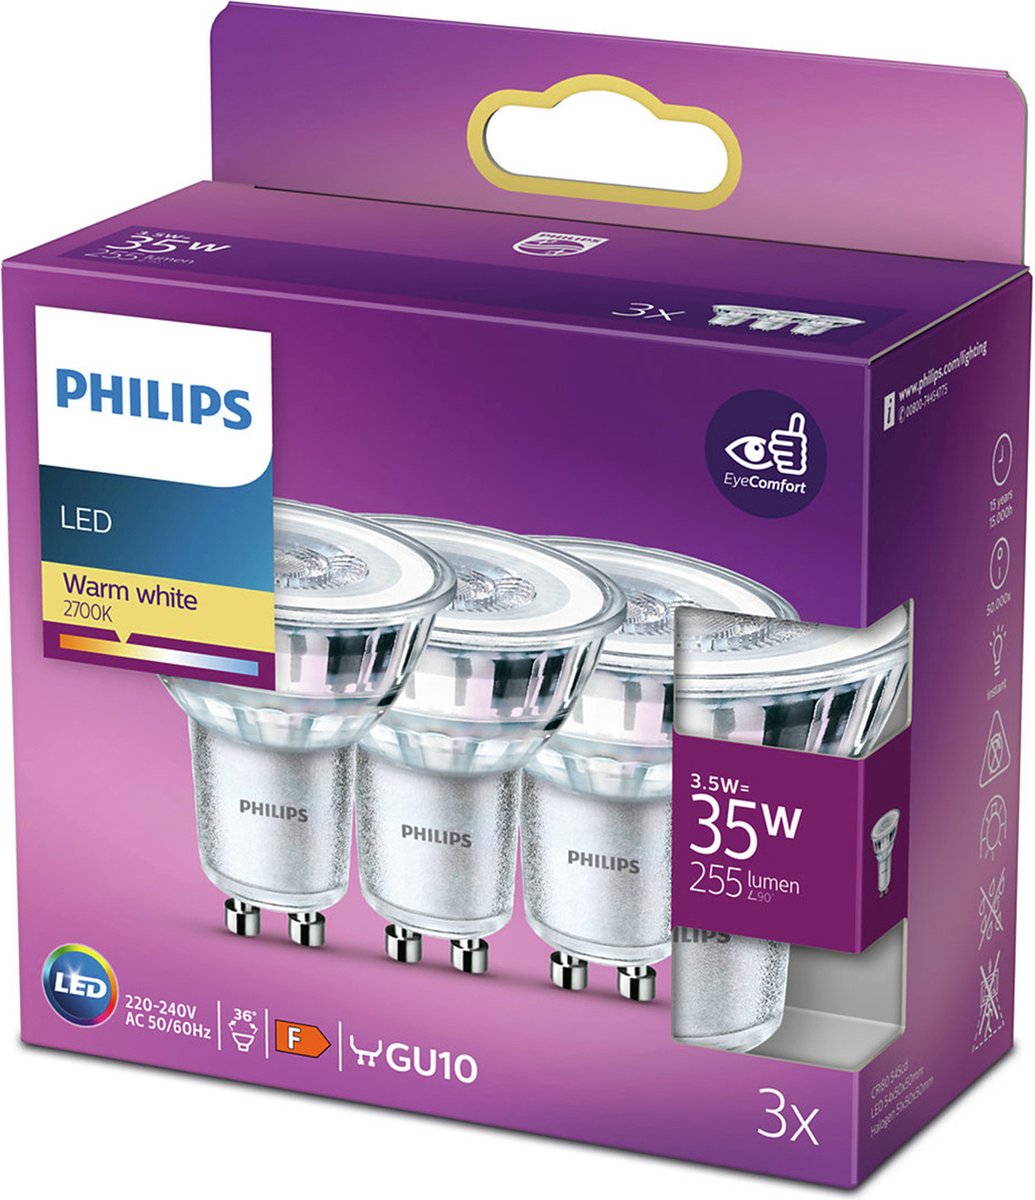 Moedig heel veel Schema Philips energiezuinige LED Spot - 35 W - GU10 - warmwit licht - 3 stuks |  bol.com